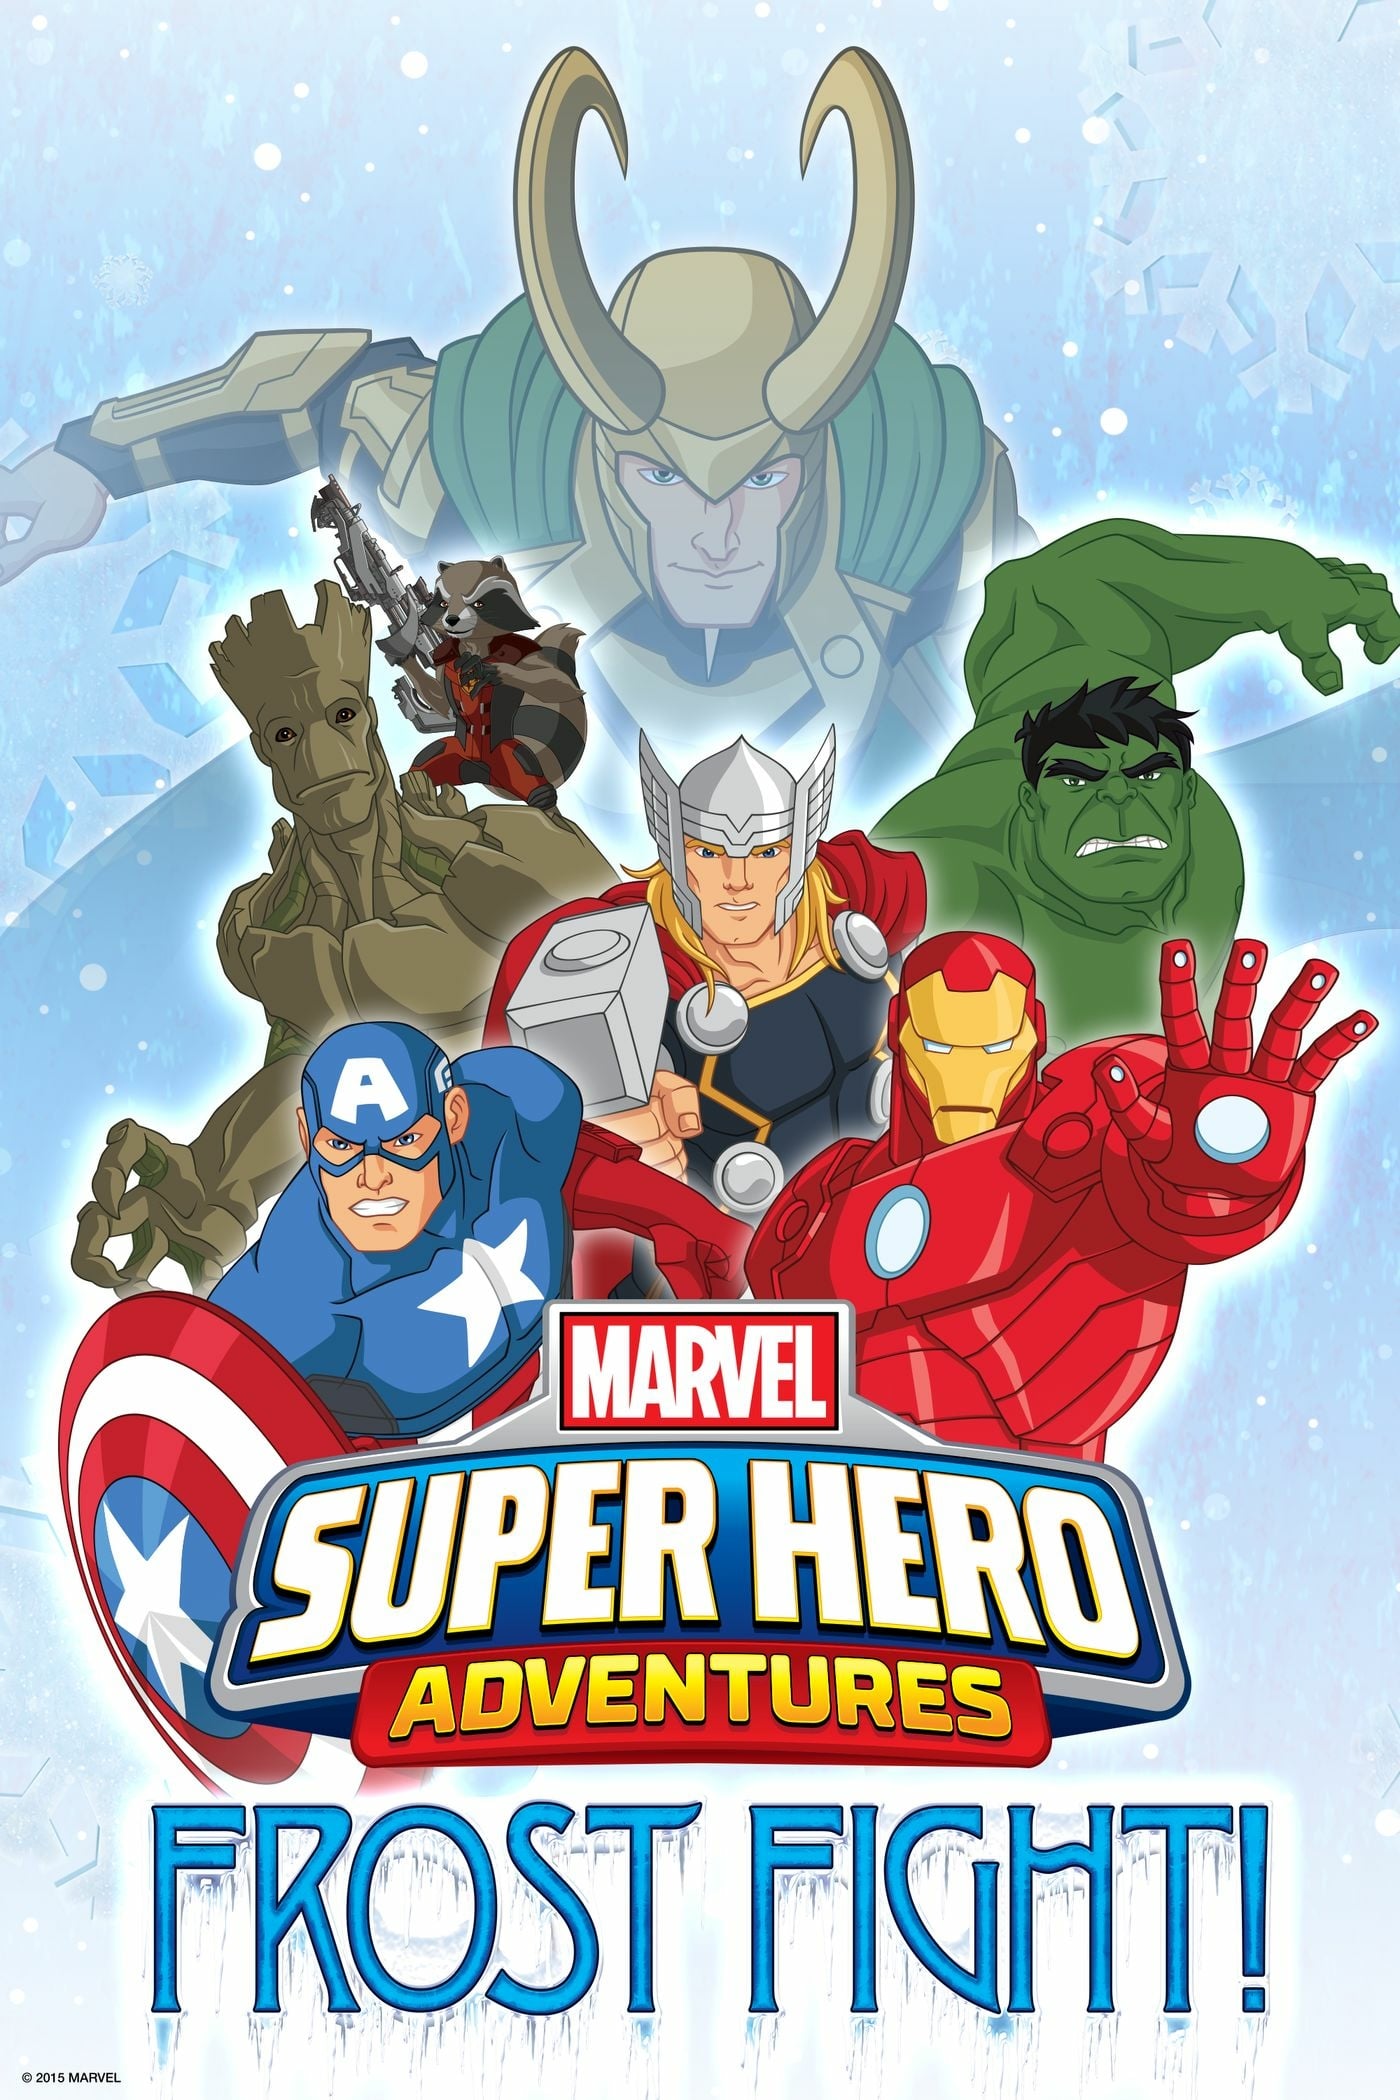 Marvel Super Heroes - Les Gladiateurs de la glace